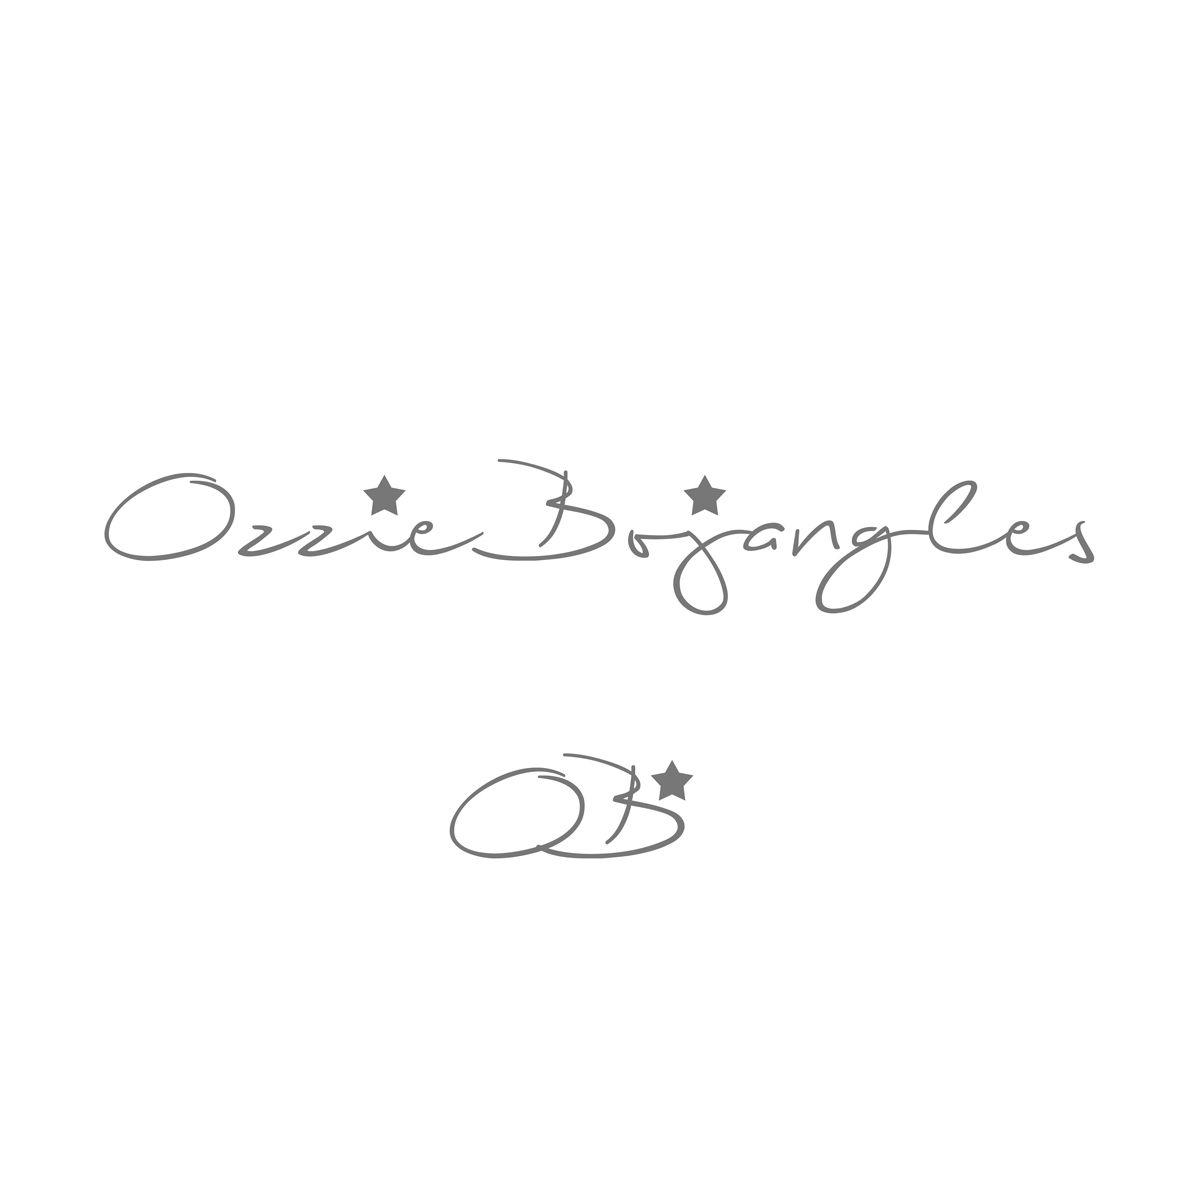 Bojangles Logo - Ozzie Bojangles